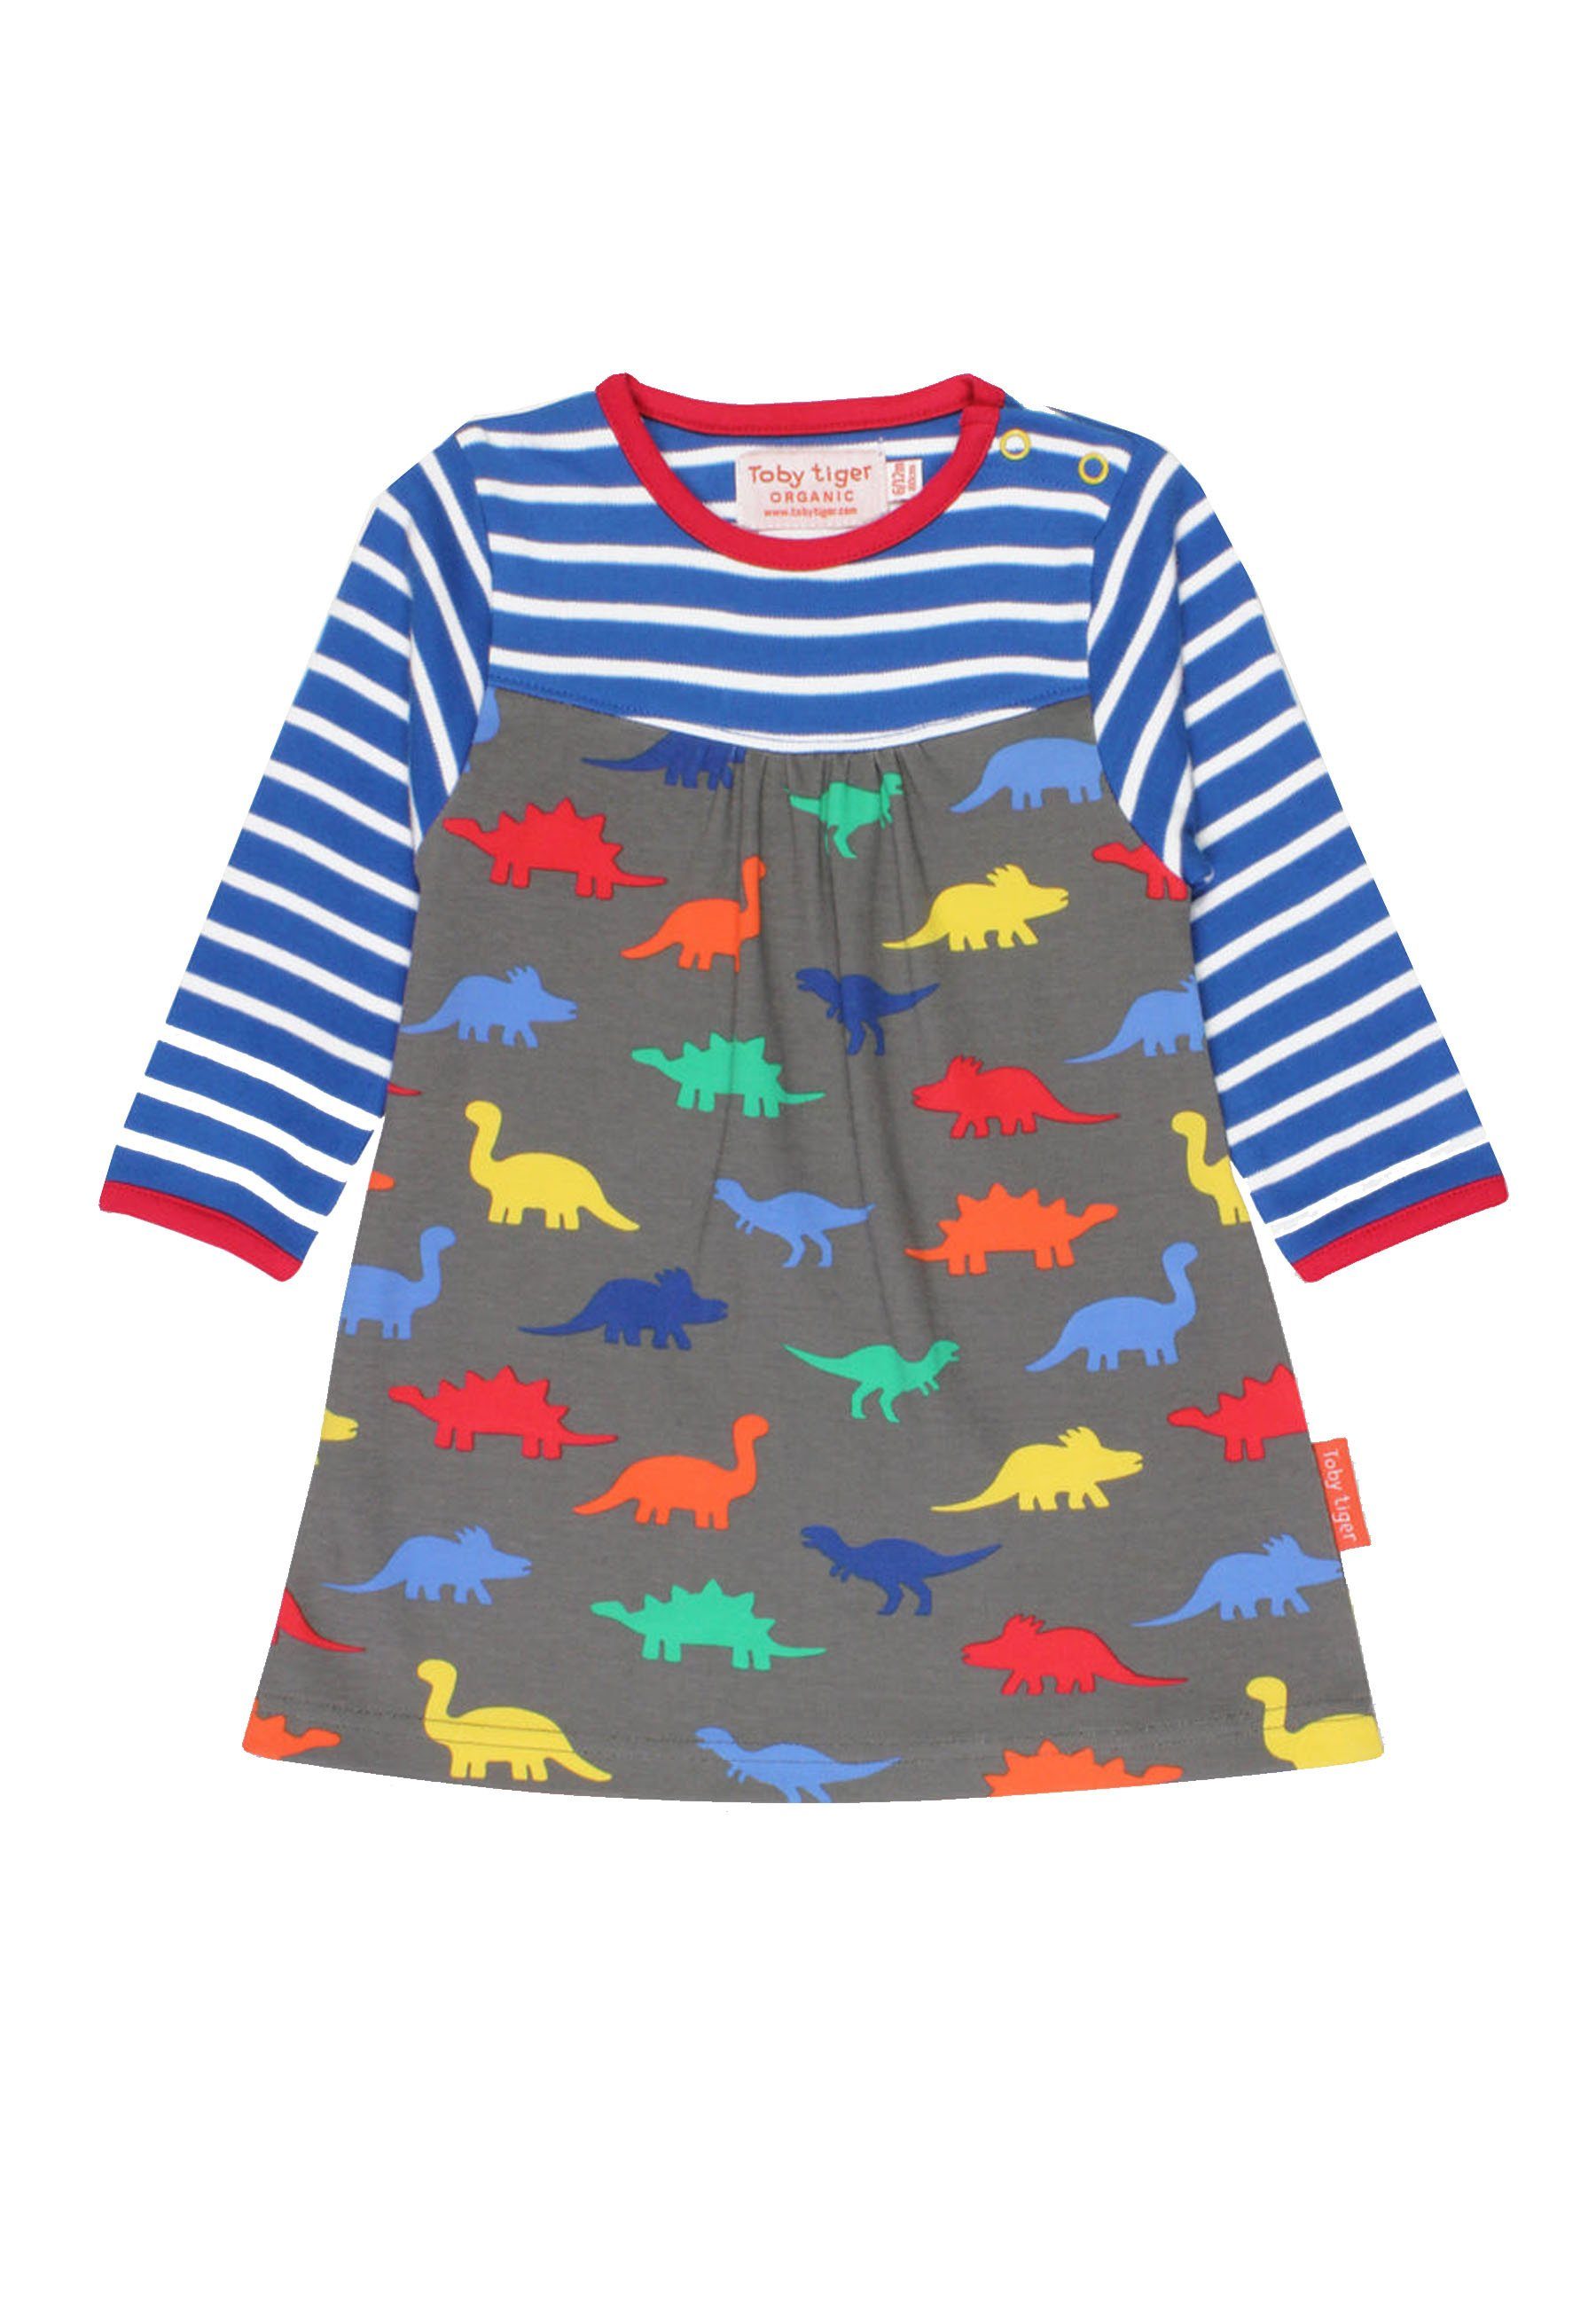 Print Toby mit und Tiger Shirtkleid Kleid Streifen Dinosaurier